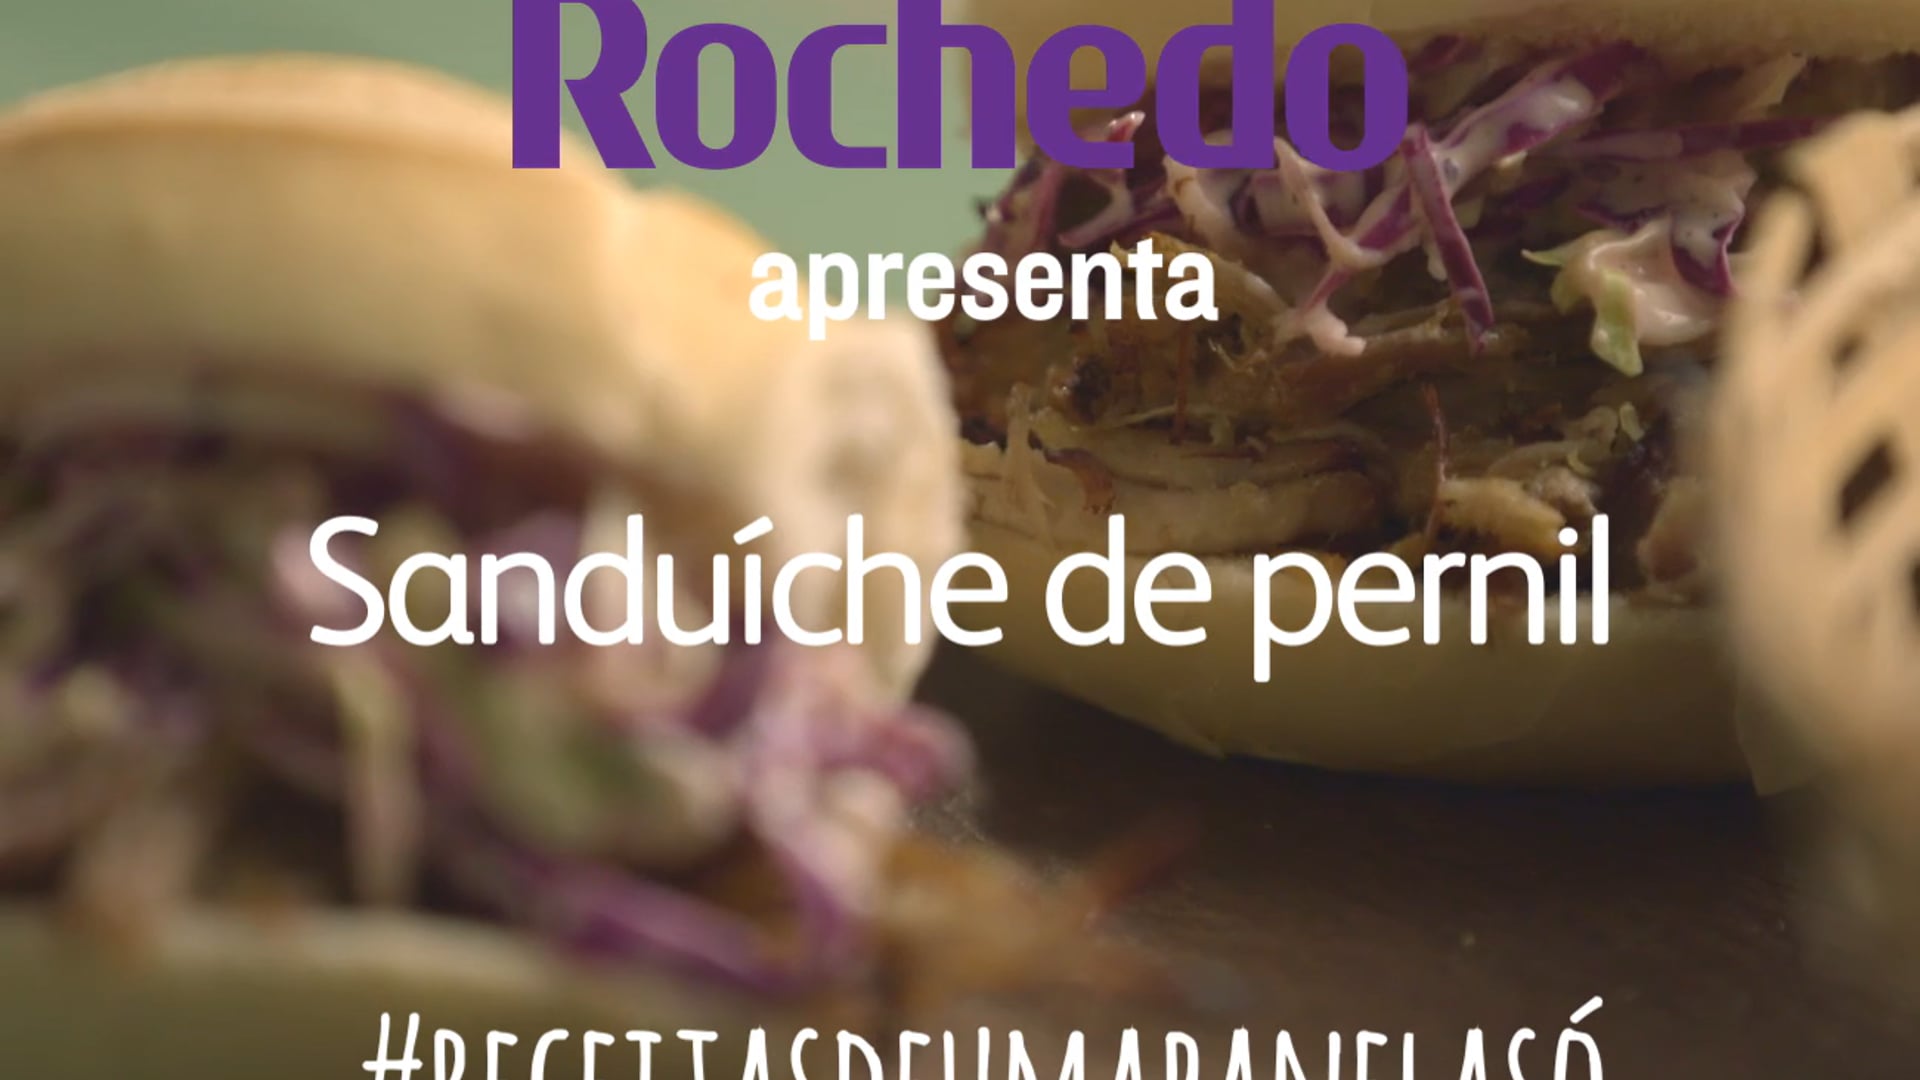 ROCHEDO-Sanduiche de pernil